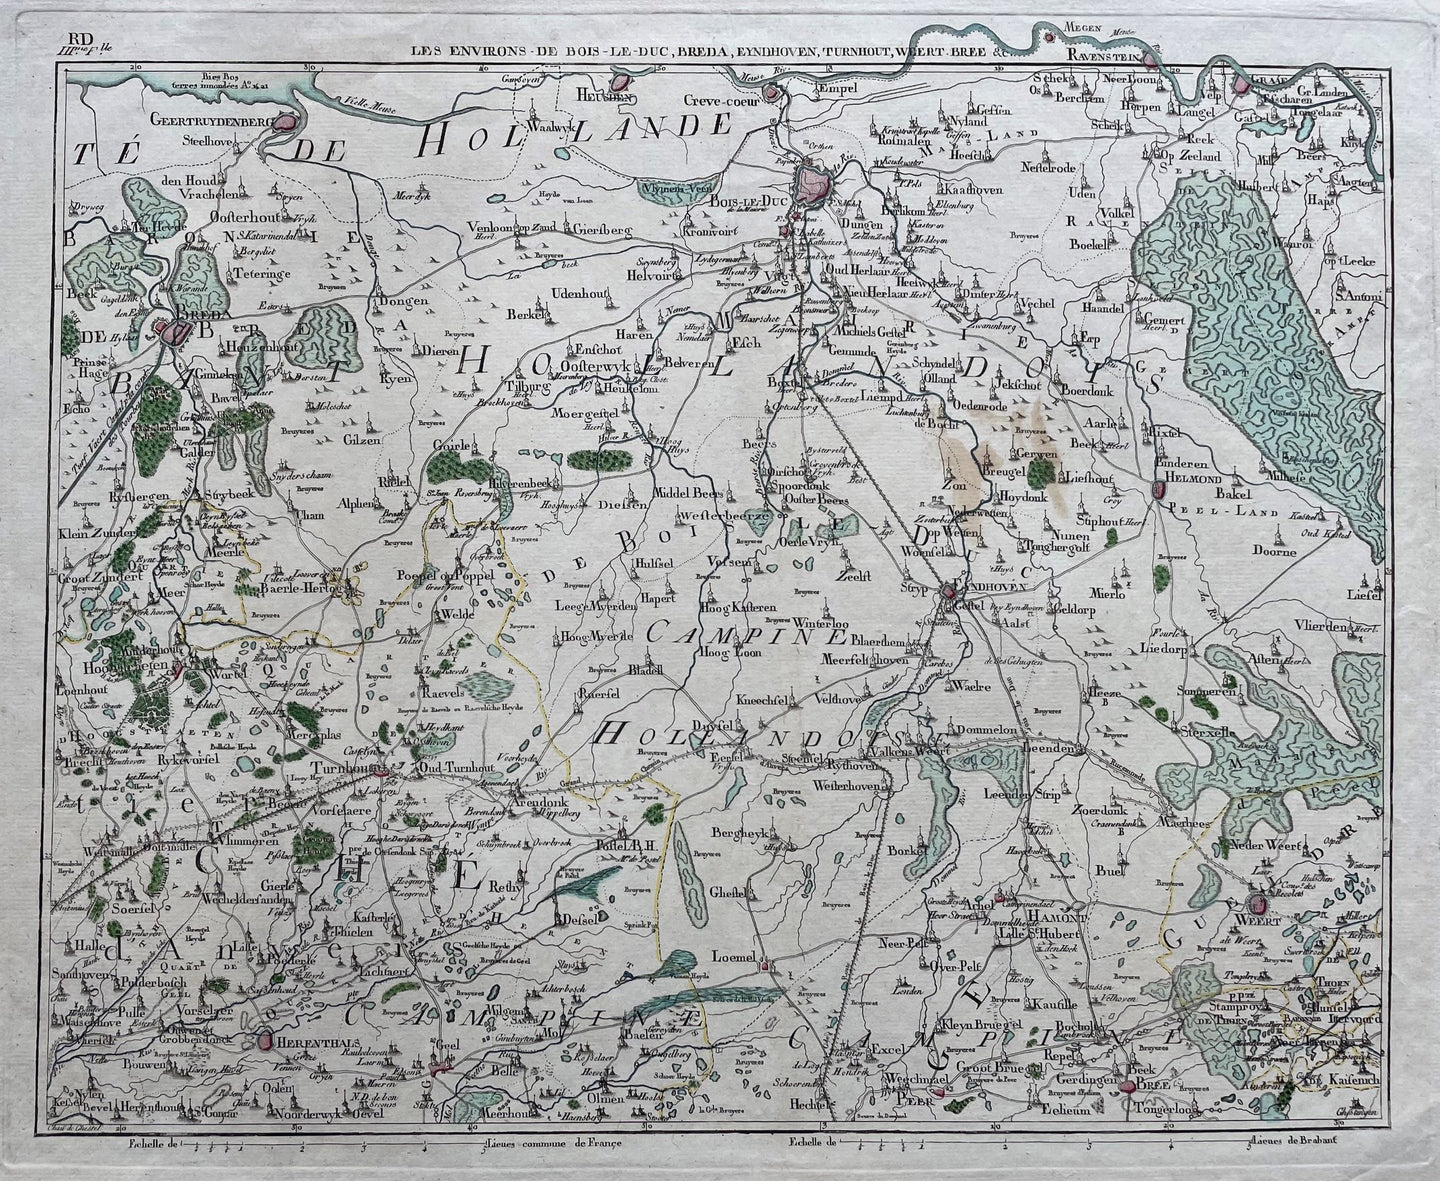 Brabant Eindhoven 's-Hertogenbosch Weert Tilburg Breda Herentals Turnhout Geel - JB de Bouge - circa 1787